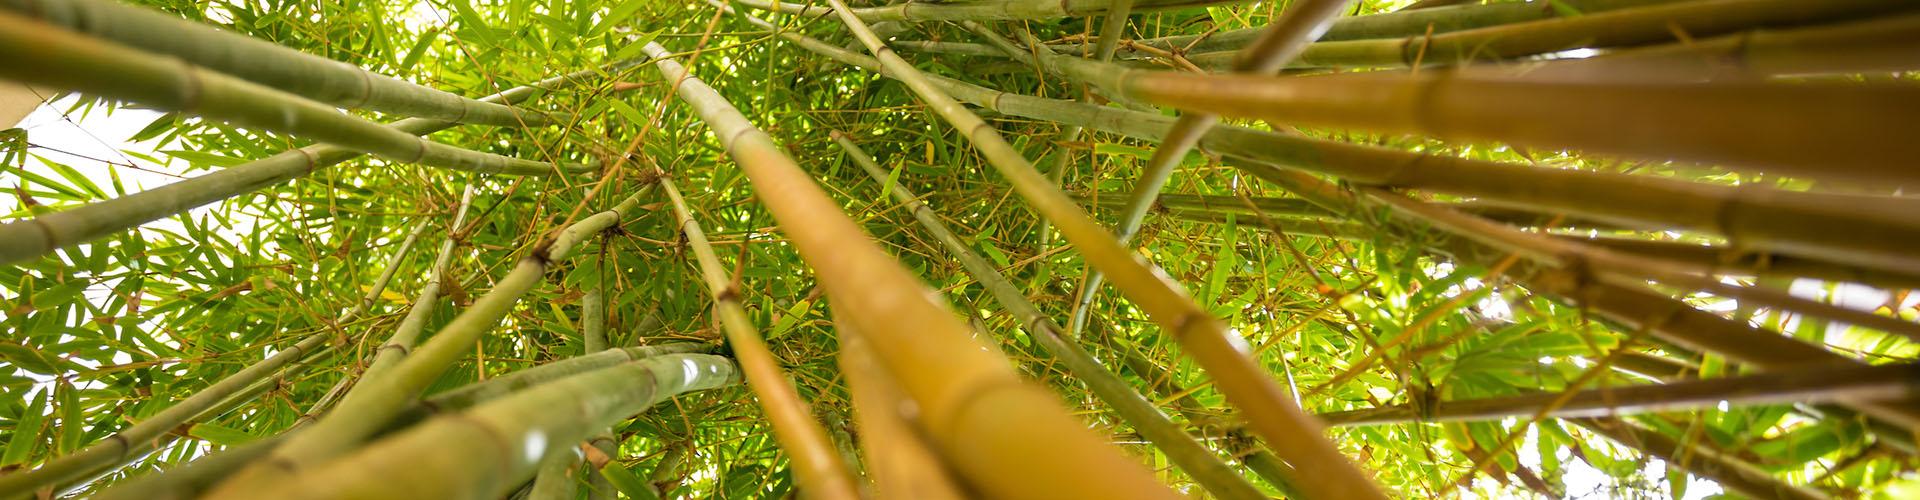 佛罗里达科技植物园的竹子